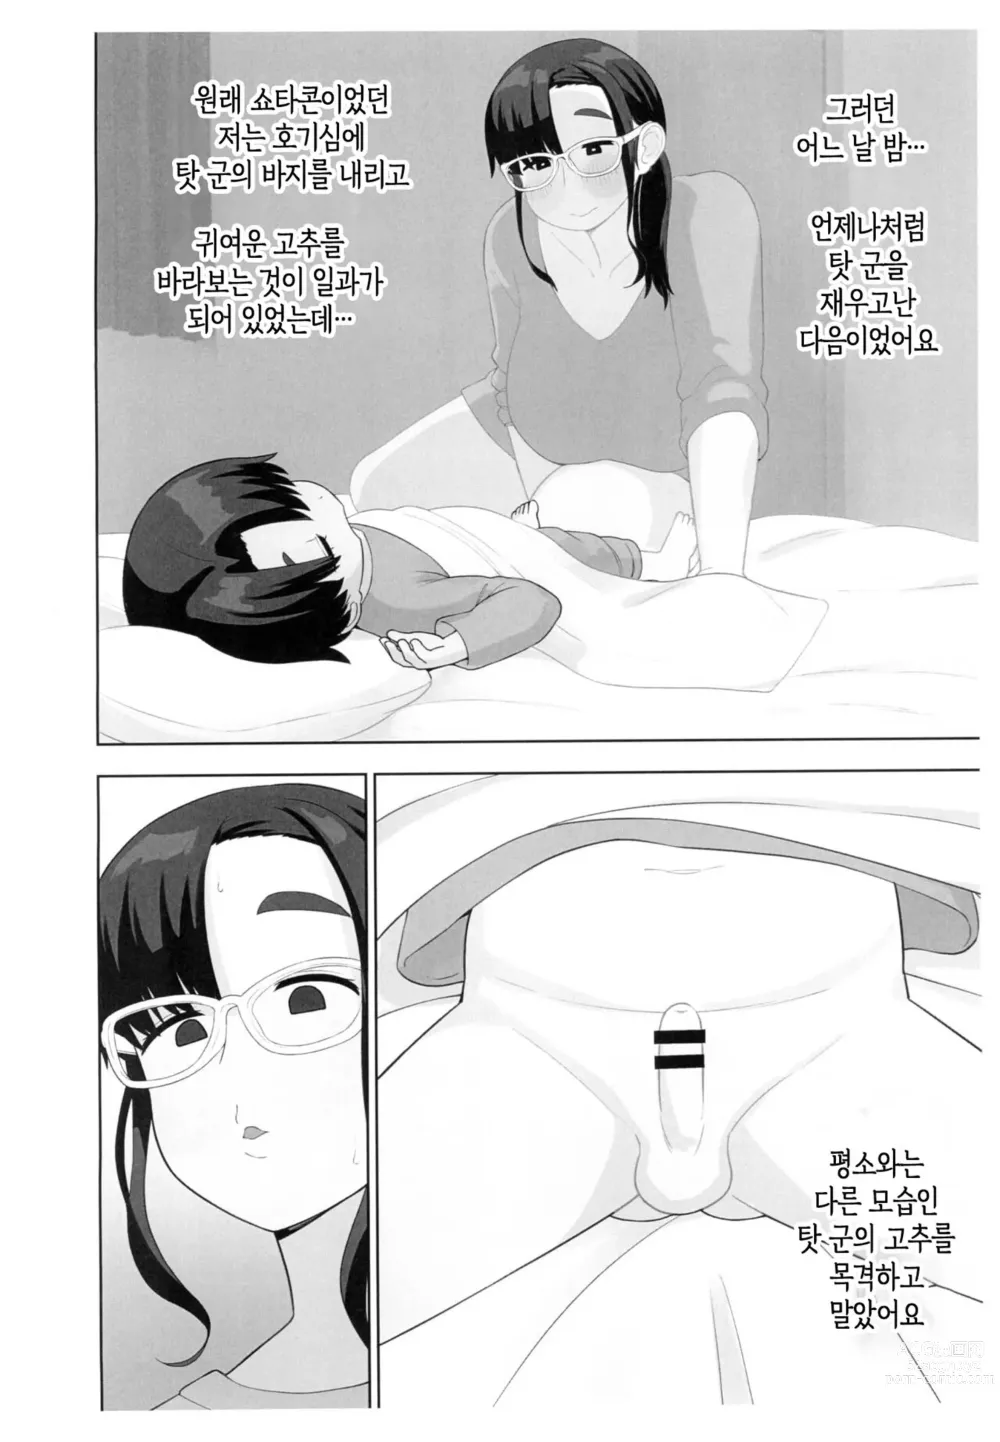 Page 3 of doujinshi 체험수기류 소설 에로동인 오네쇼타 동인작가 엄마의 비밀